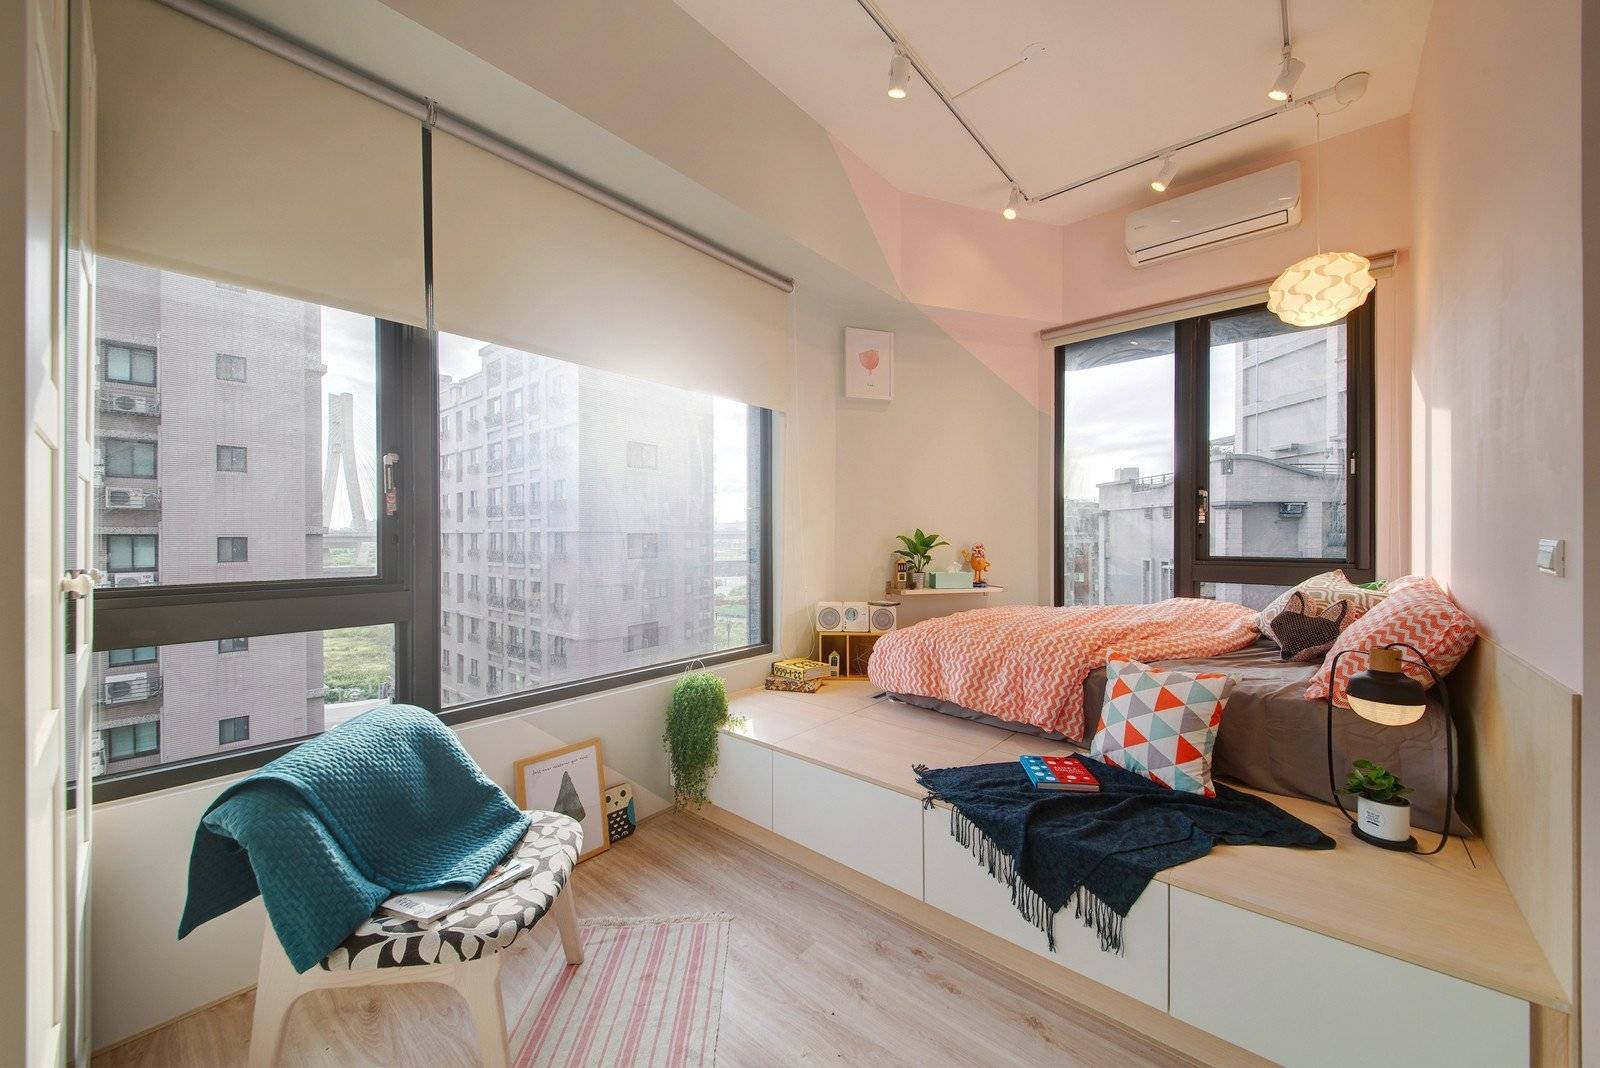 кровати подиумы в интерьере маленькой квартиры